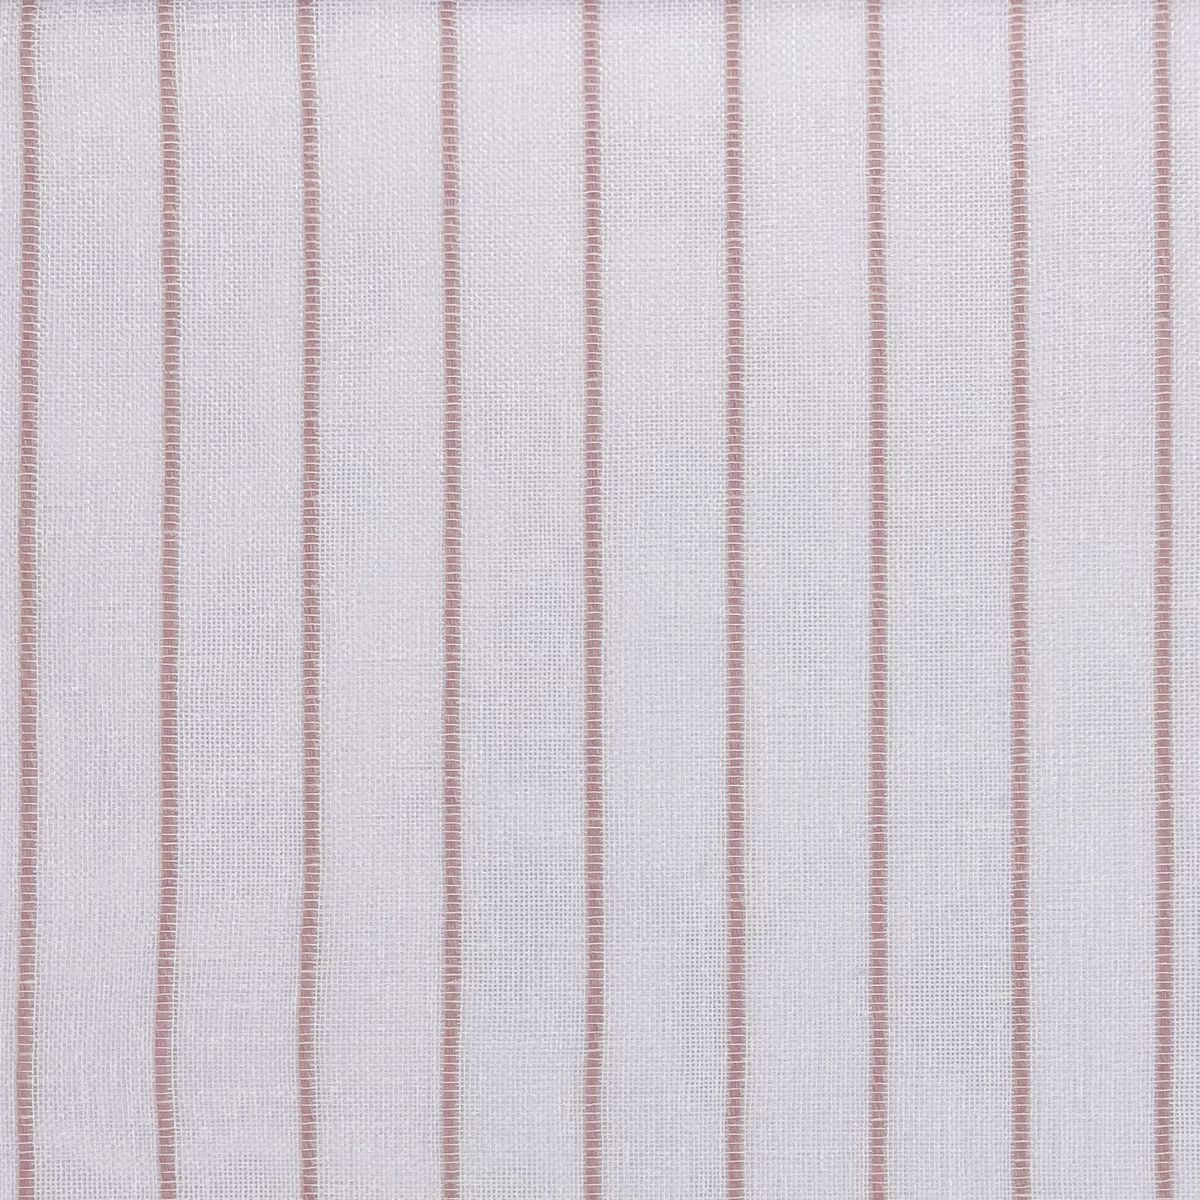 Mykonos Blush Fabric by Chatham Glyn